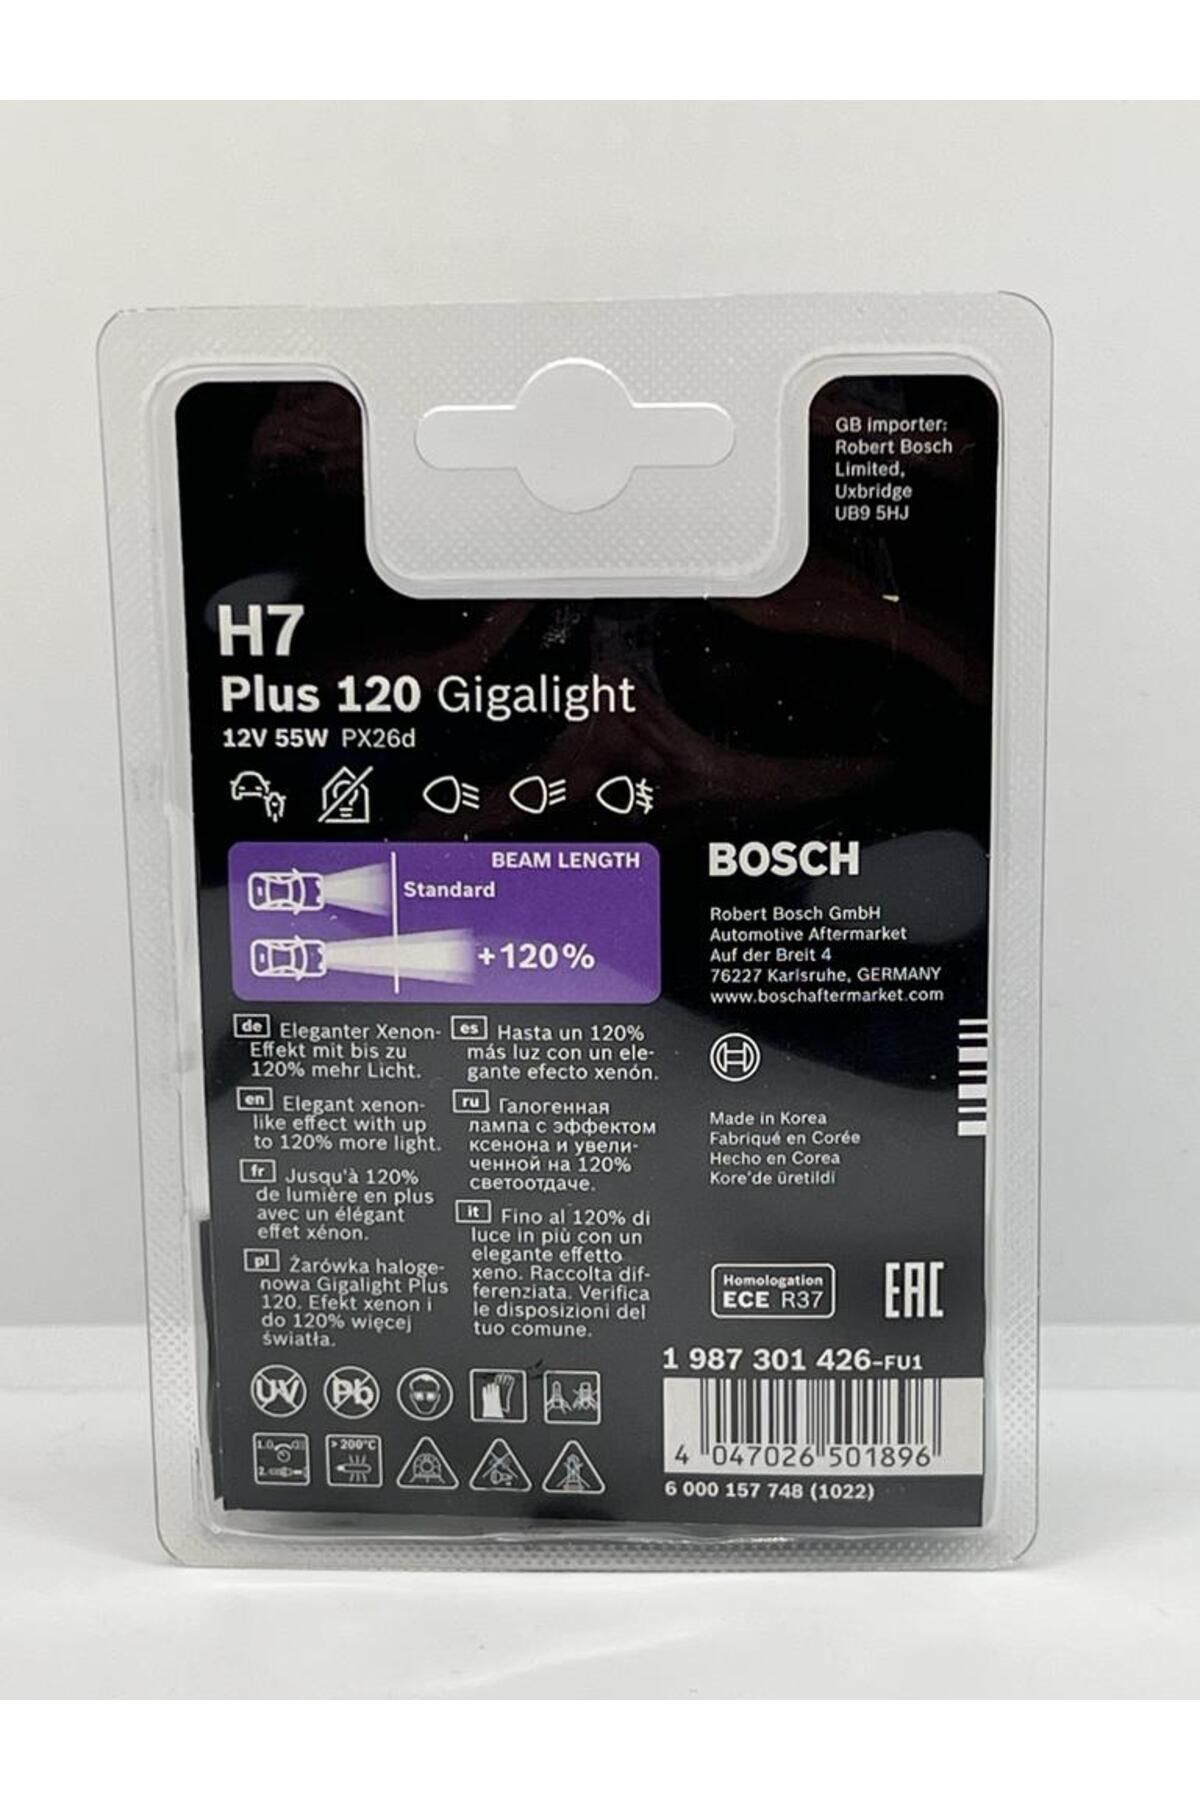 Bosch Plus 200 Gigalight als H7- und H4-Licht